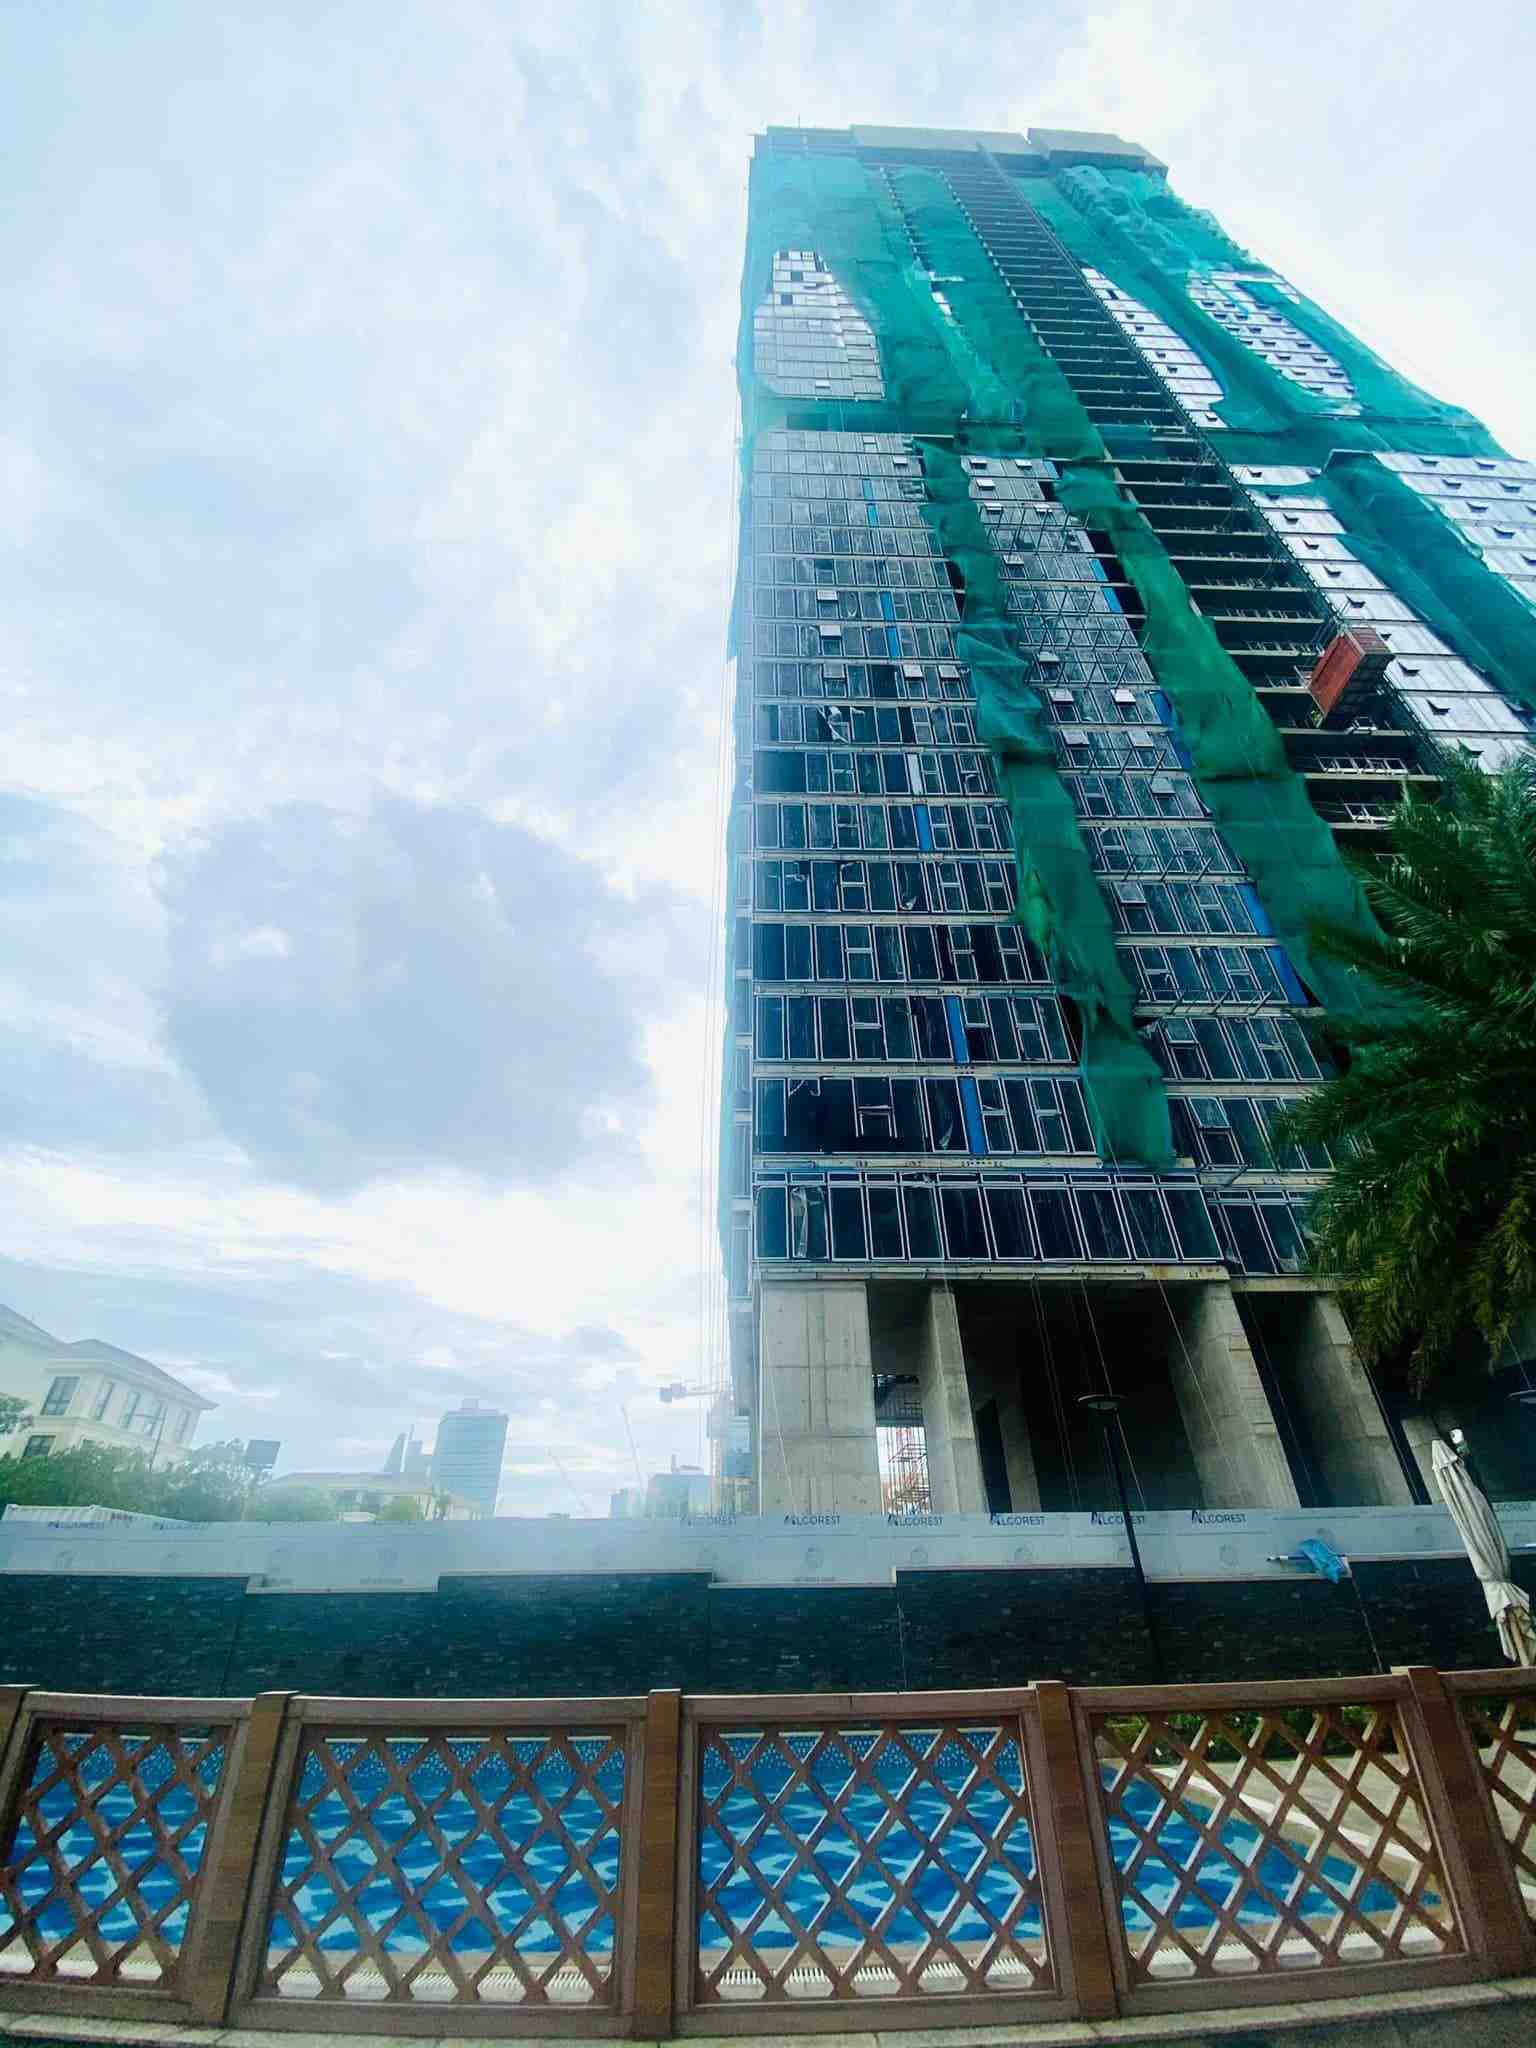 Cập nhật tiến độ dự án căn hộ hàng hiệu Grand Marina, Saigon tháng 7/2022